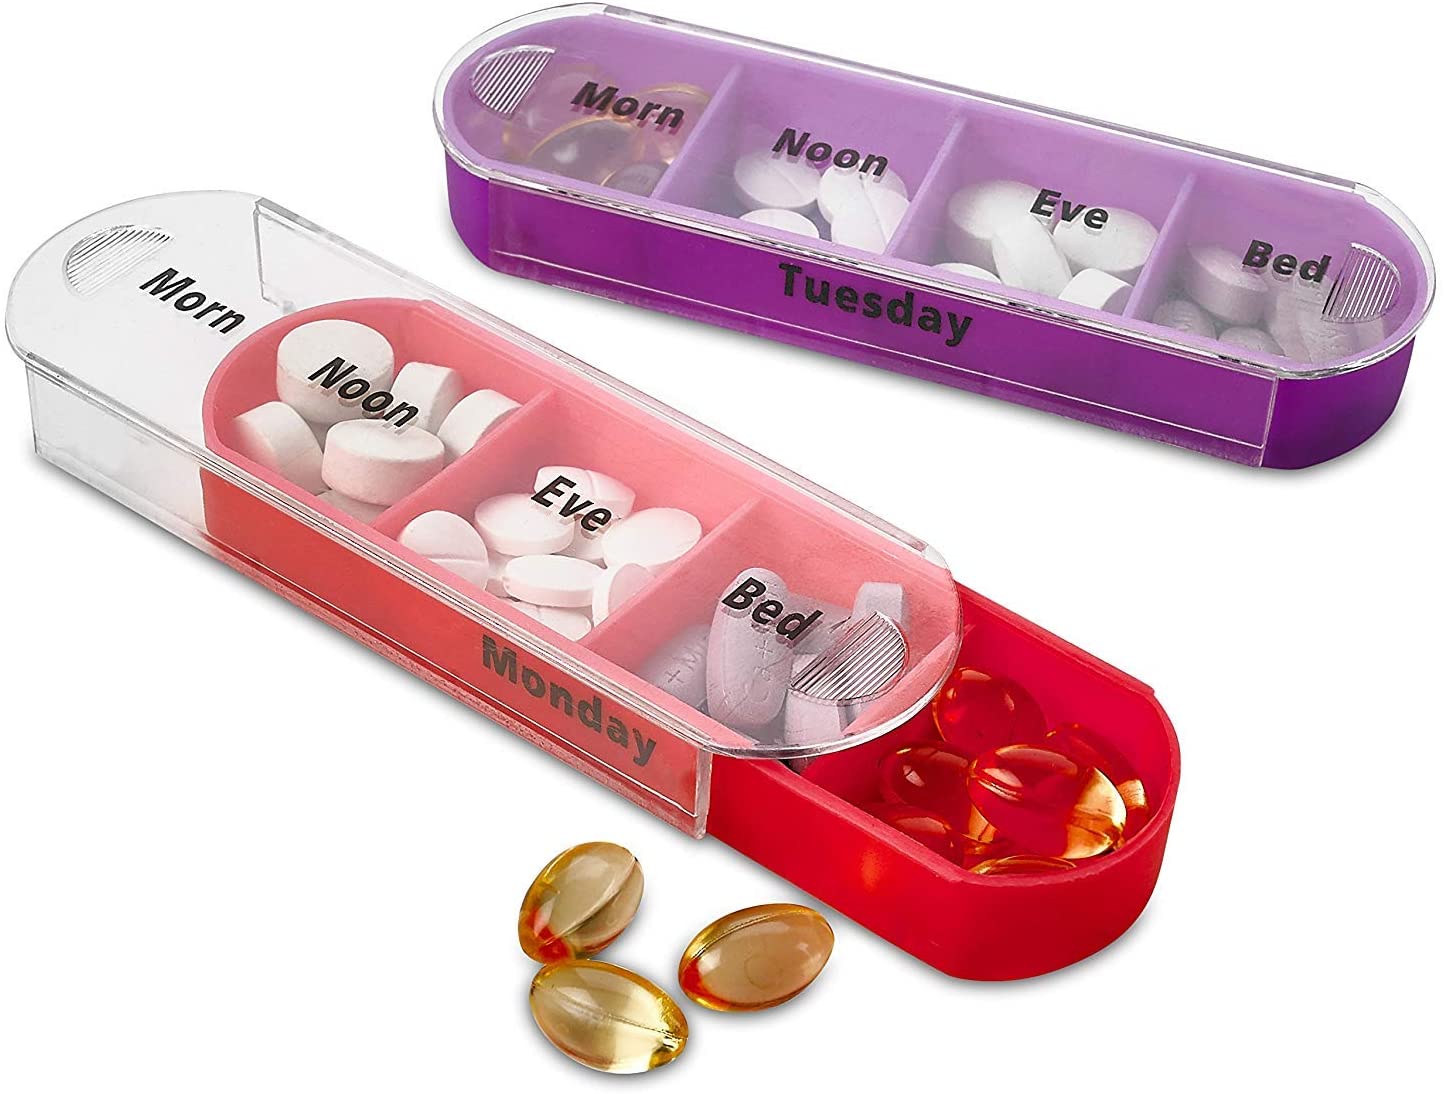 Dispenser settimanale di pillole di protezione promozionale con tagliapillole